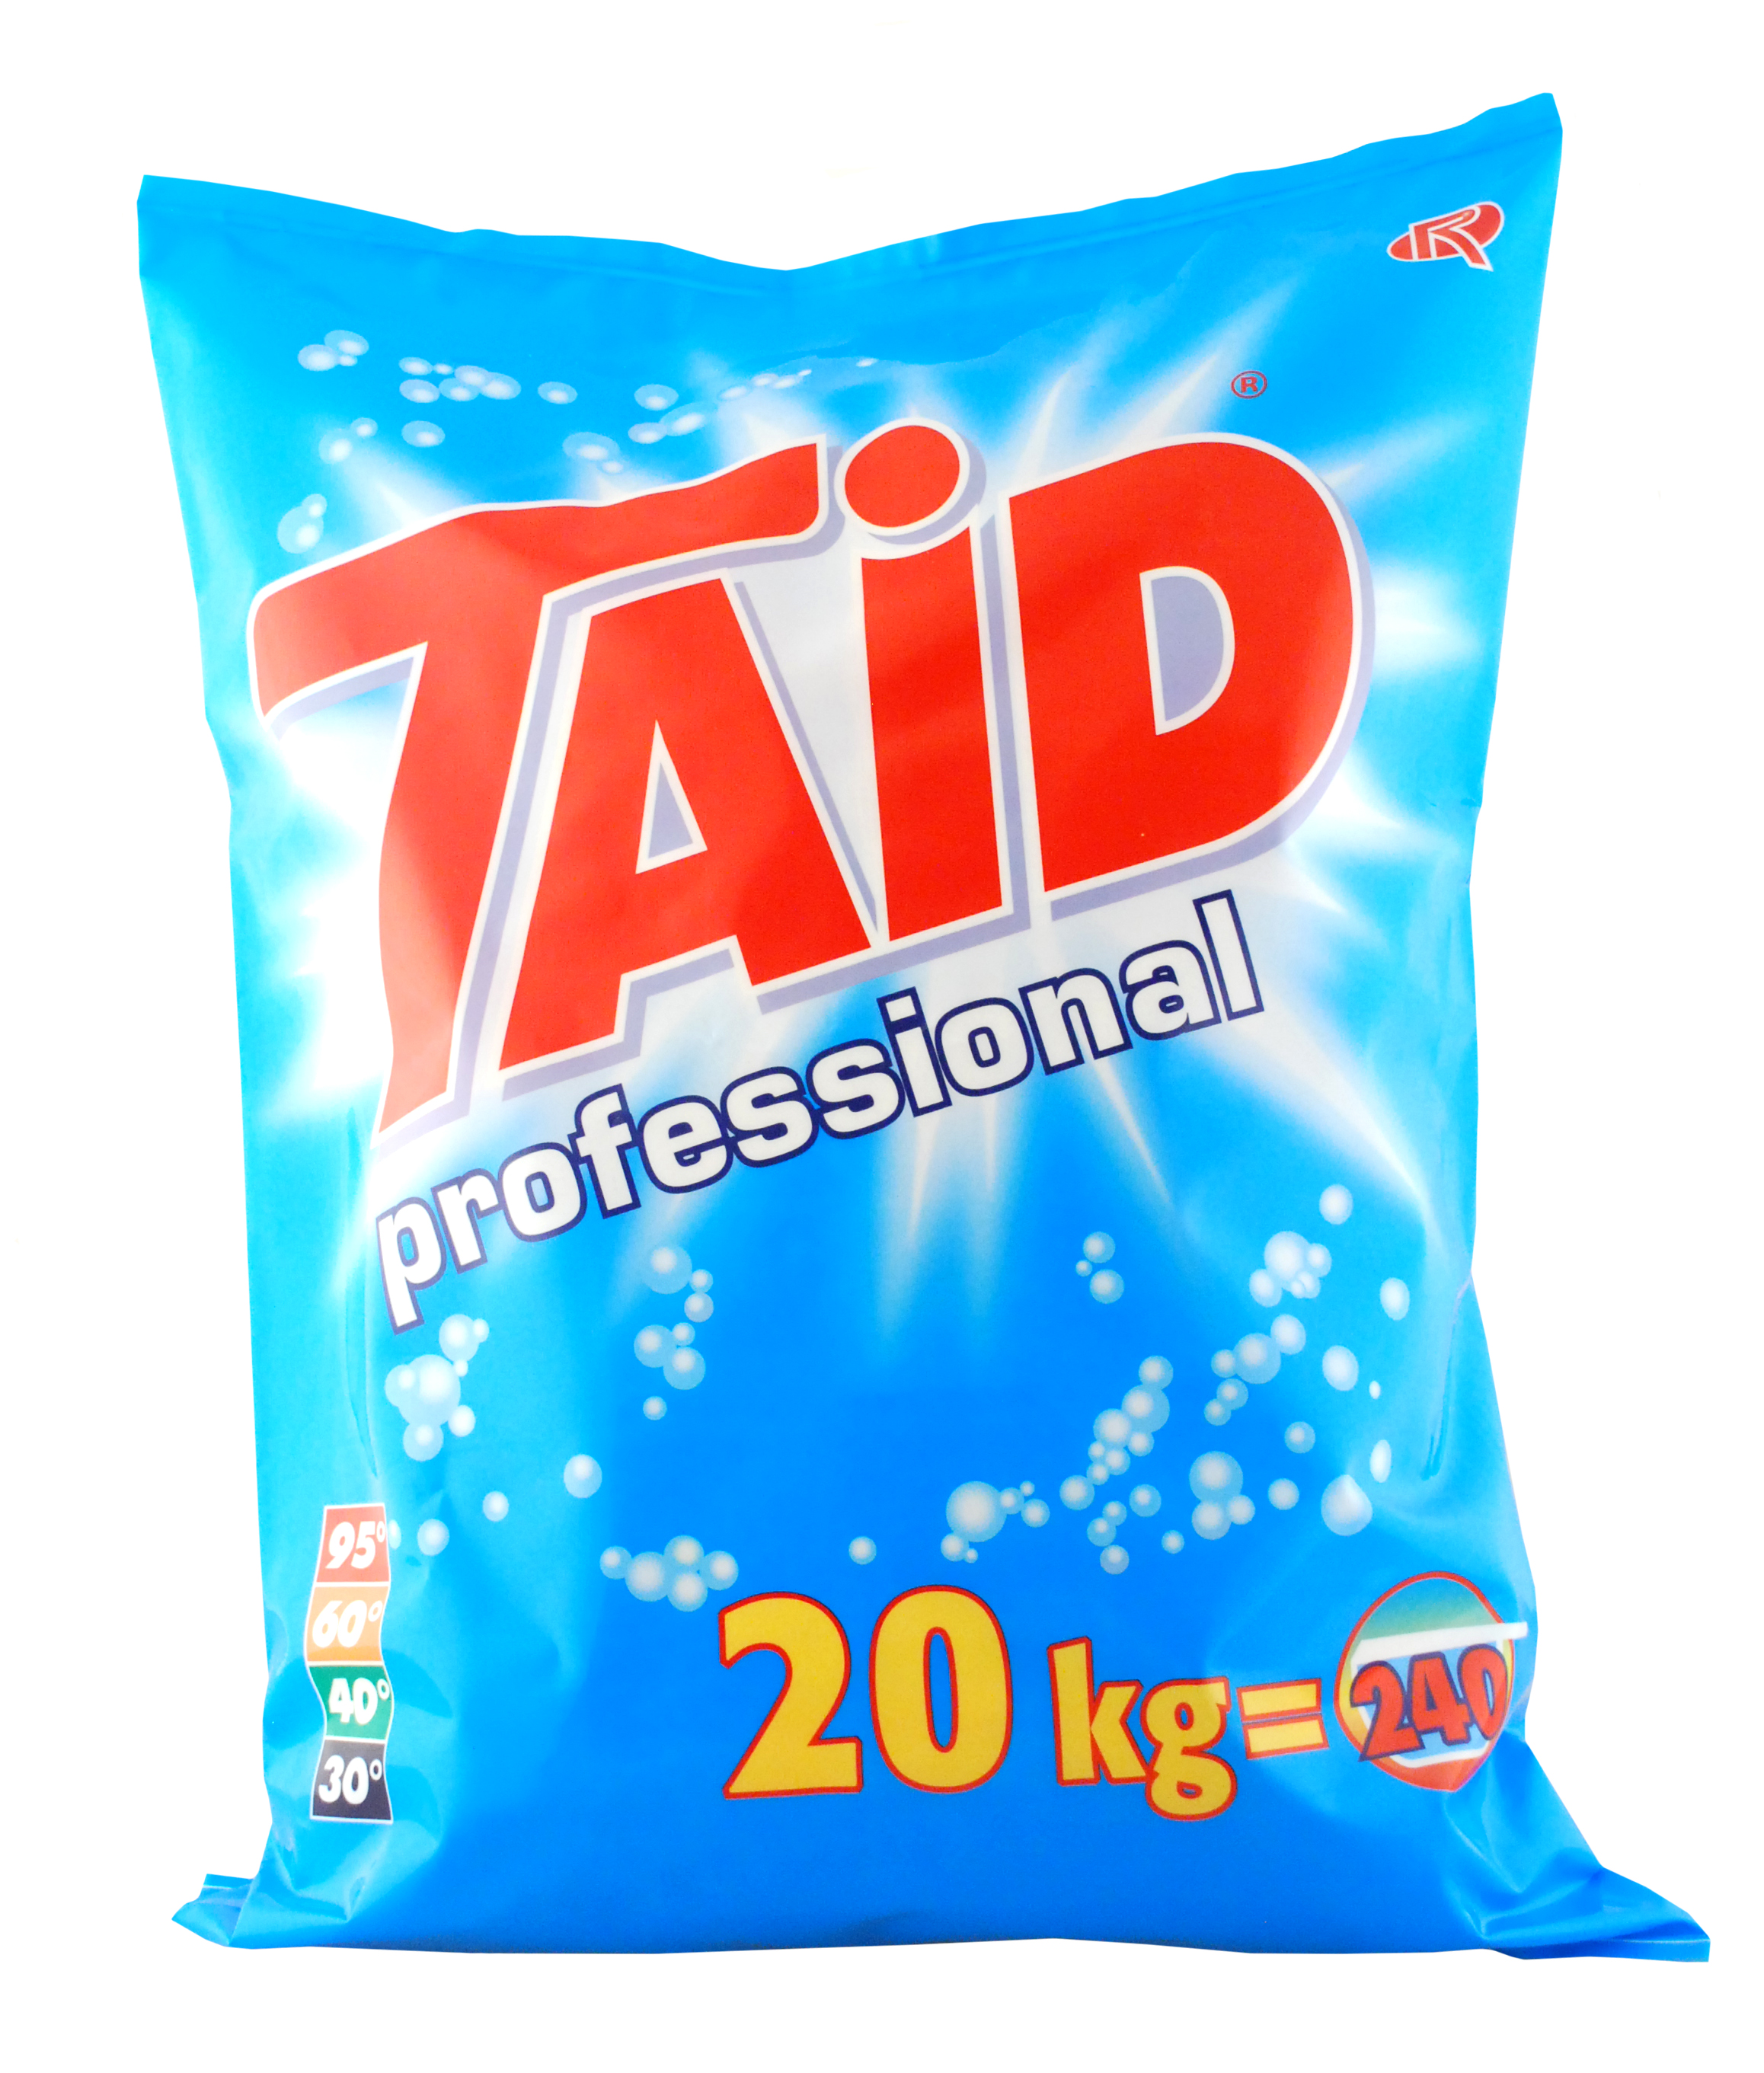 TAiD professional Vollwaschmittel, phosphatfrei, weiß, 20 kg